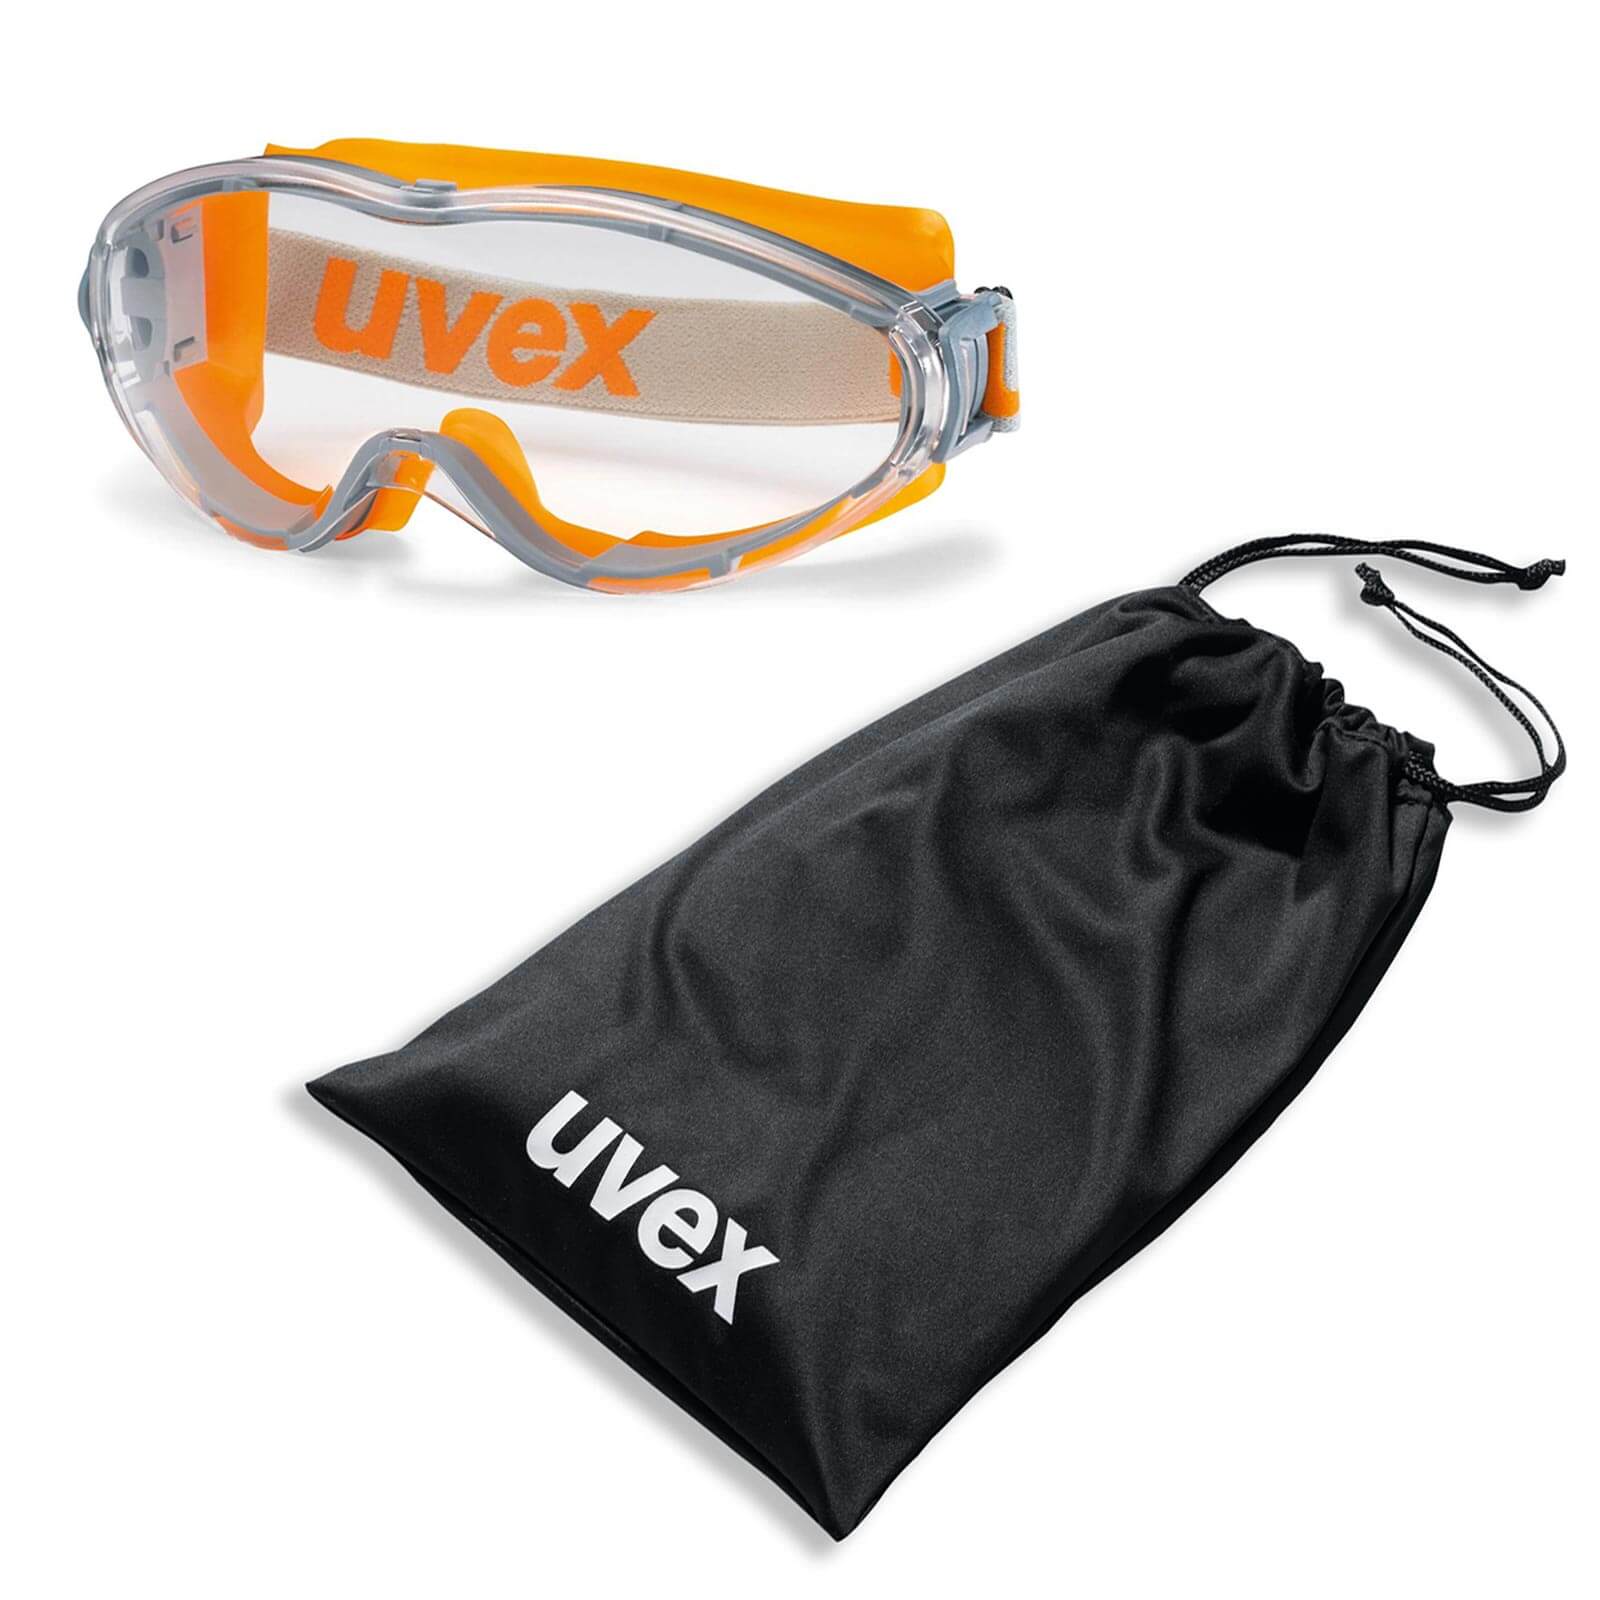 UVEX Vollsichtbrille ultrasonic 9302 - Schutzbrille + Beutel - 9302285 / 9302245 Farbe:orange-grau / klar von Uvex